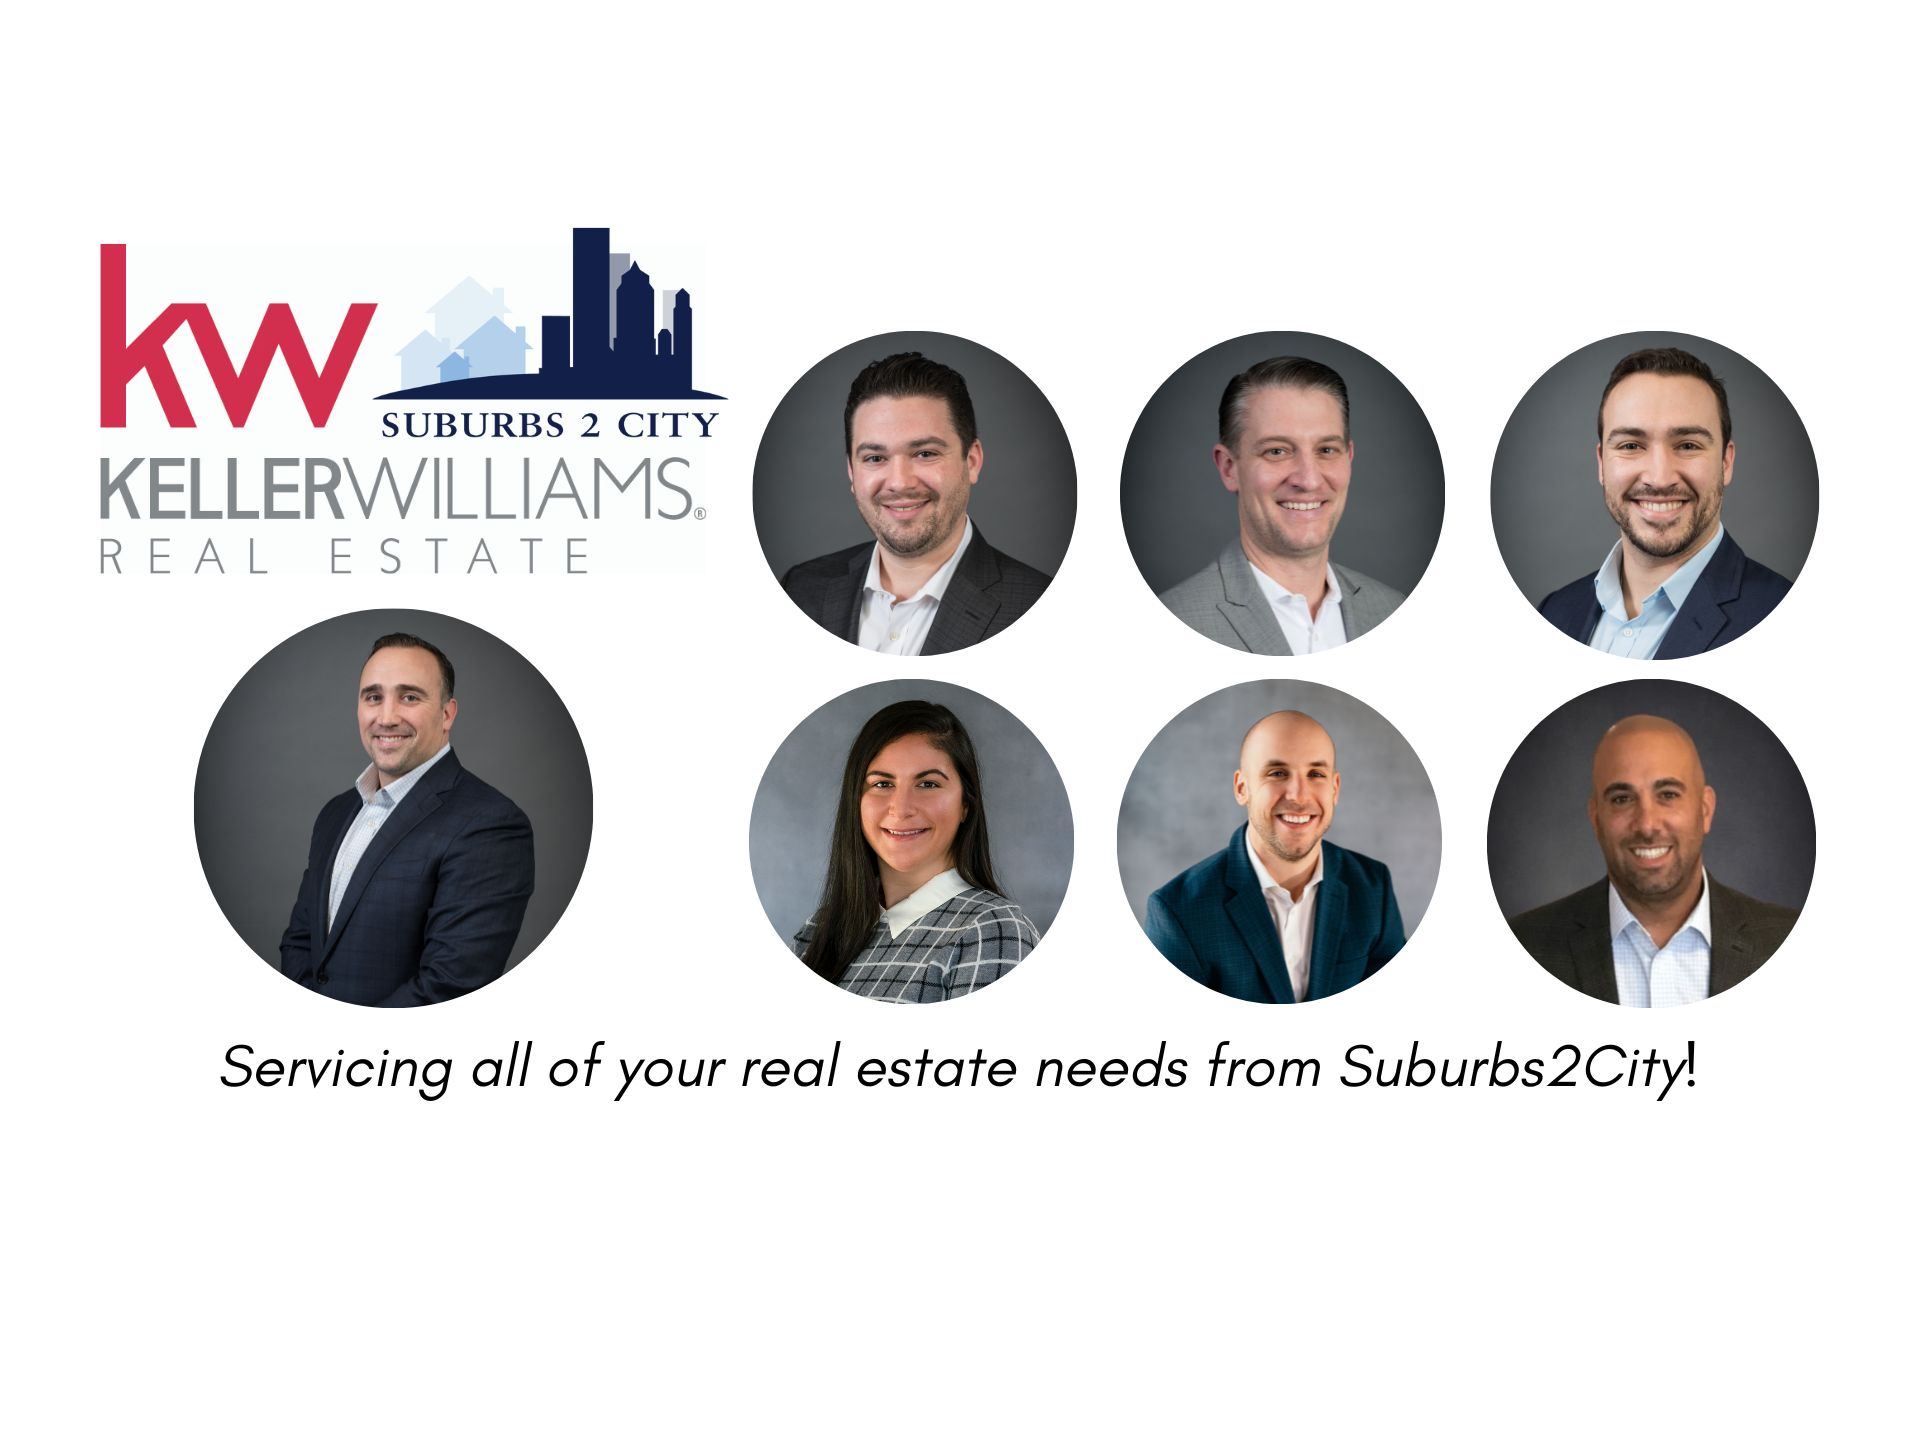 The Suburbs2City Team